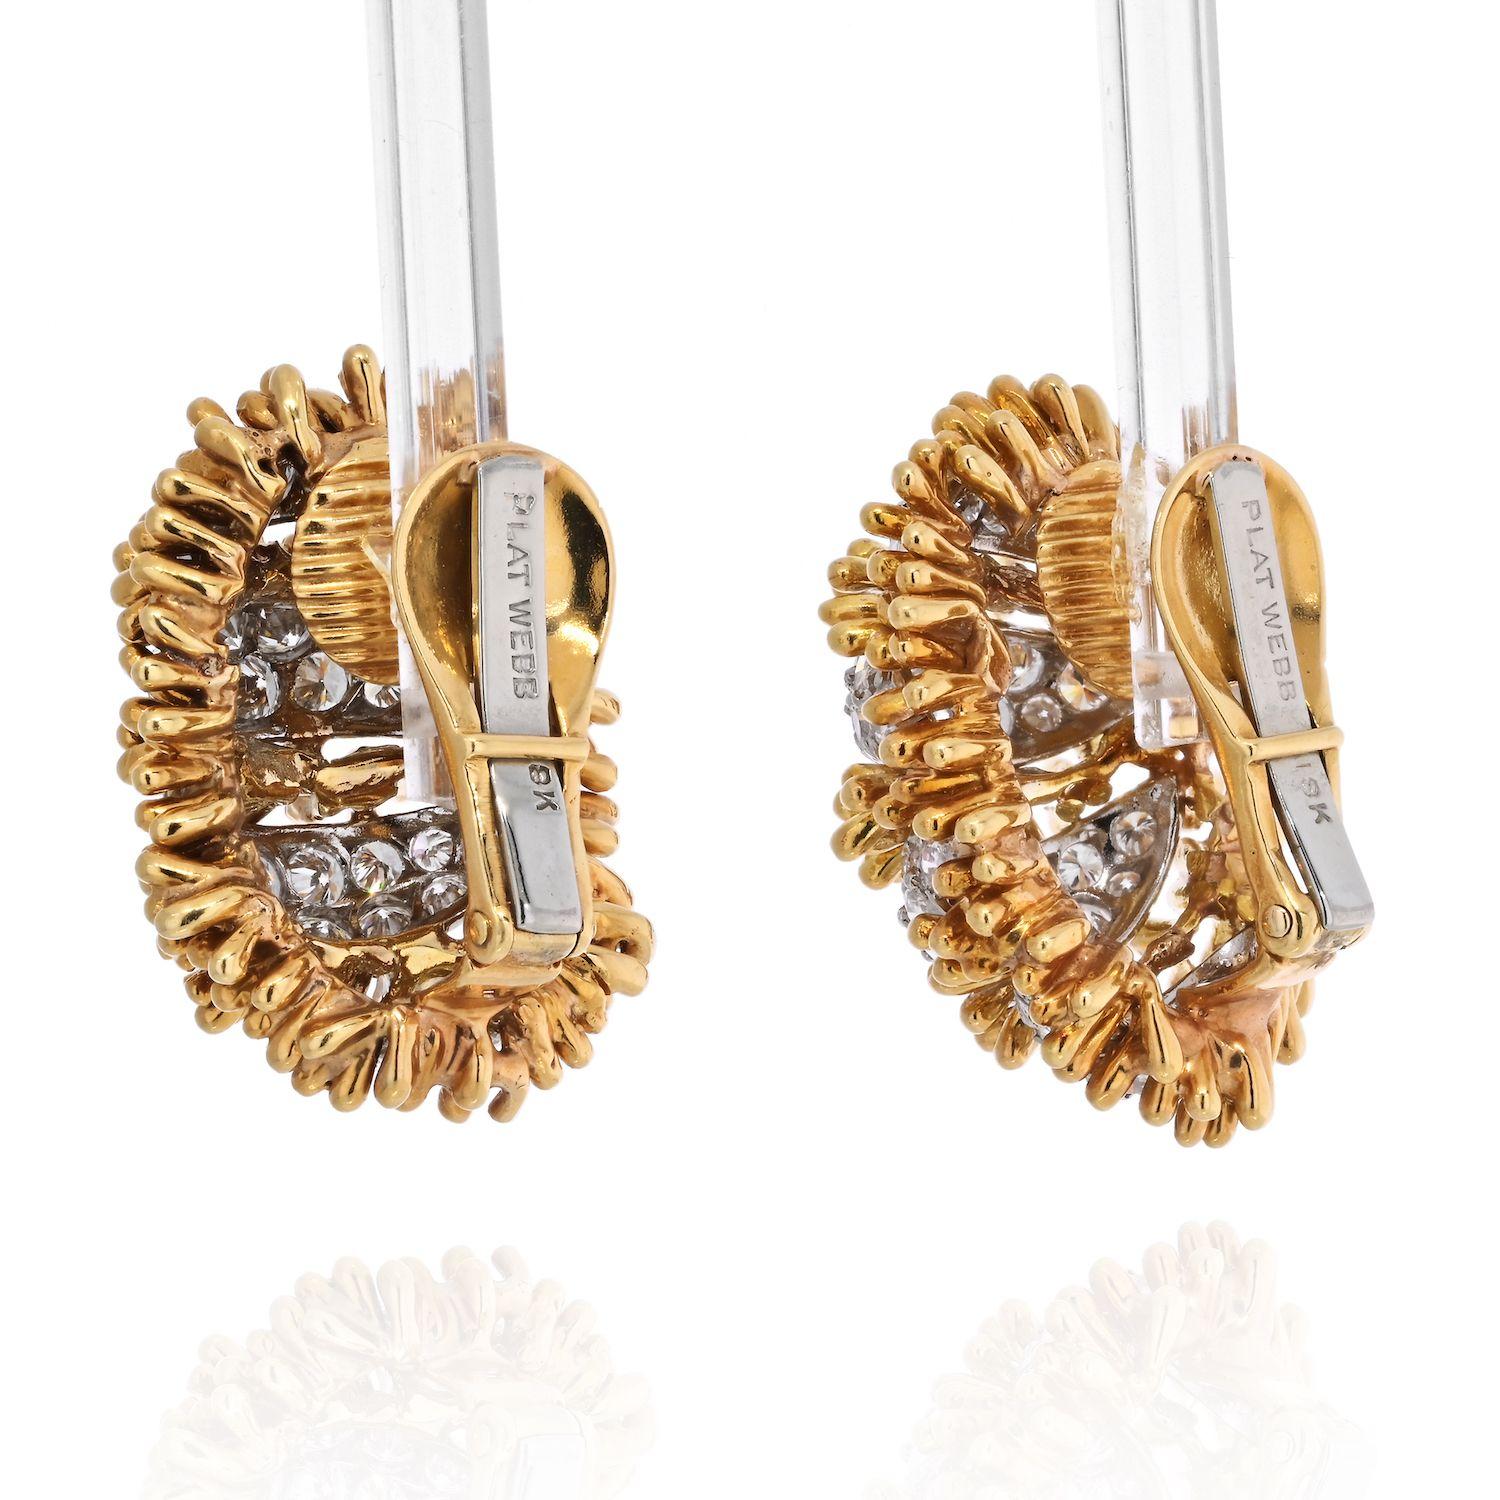 Entworfen von der obersten Schublade der Quintessenz  Amerikanischer Juwelier David Webb, um 1970, jeweils aus Platin, poliertem 18-karätigem Gelbgold und Diamanten gefertigt.
David Webb Ohrclips haben eine gewölbte Gelbgold Perlen Design von 26 x